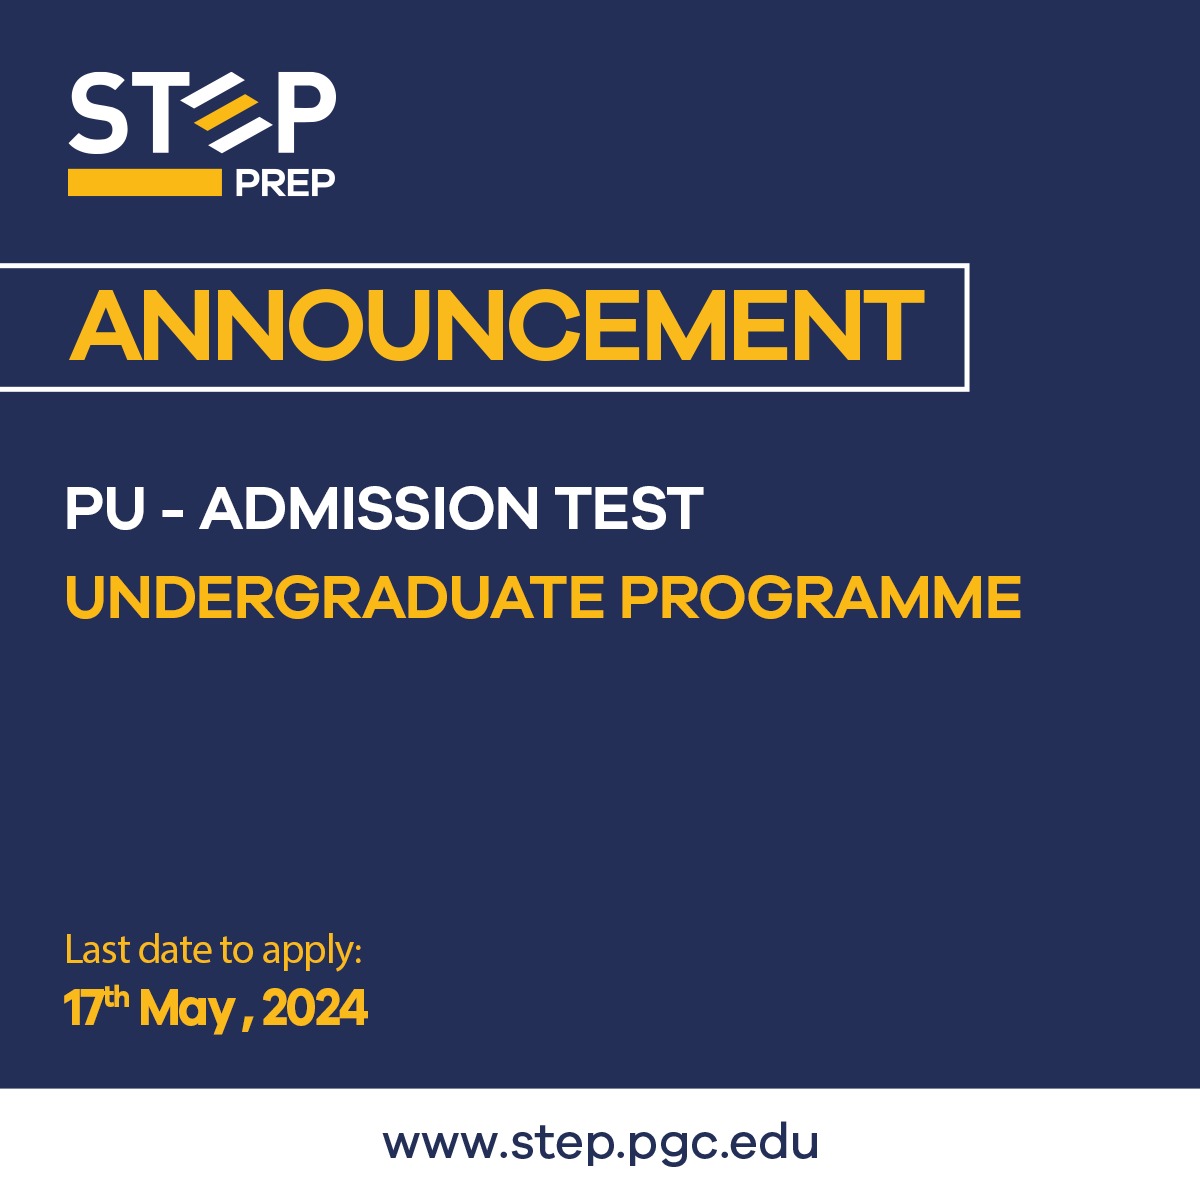 PU admission test